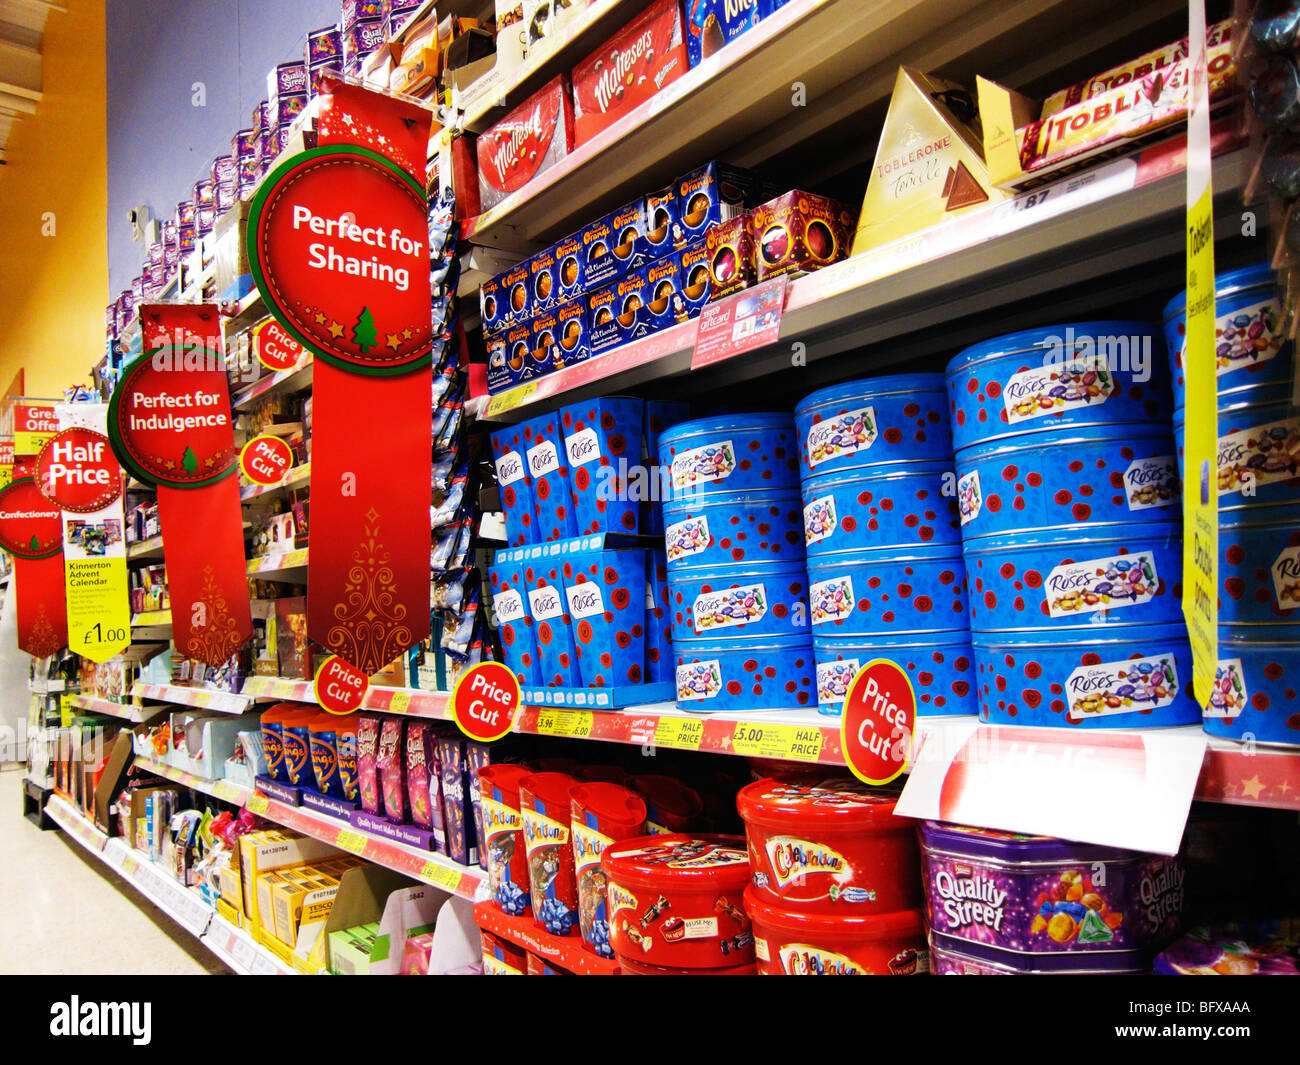 Tesco-Supermarkt mit Regalen voller Weihnachten Schokolade Stockfotografie  - Alamy